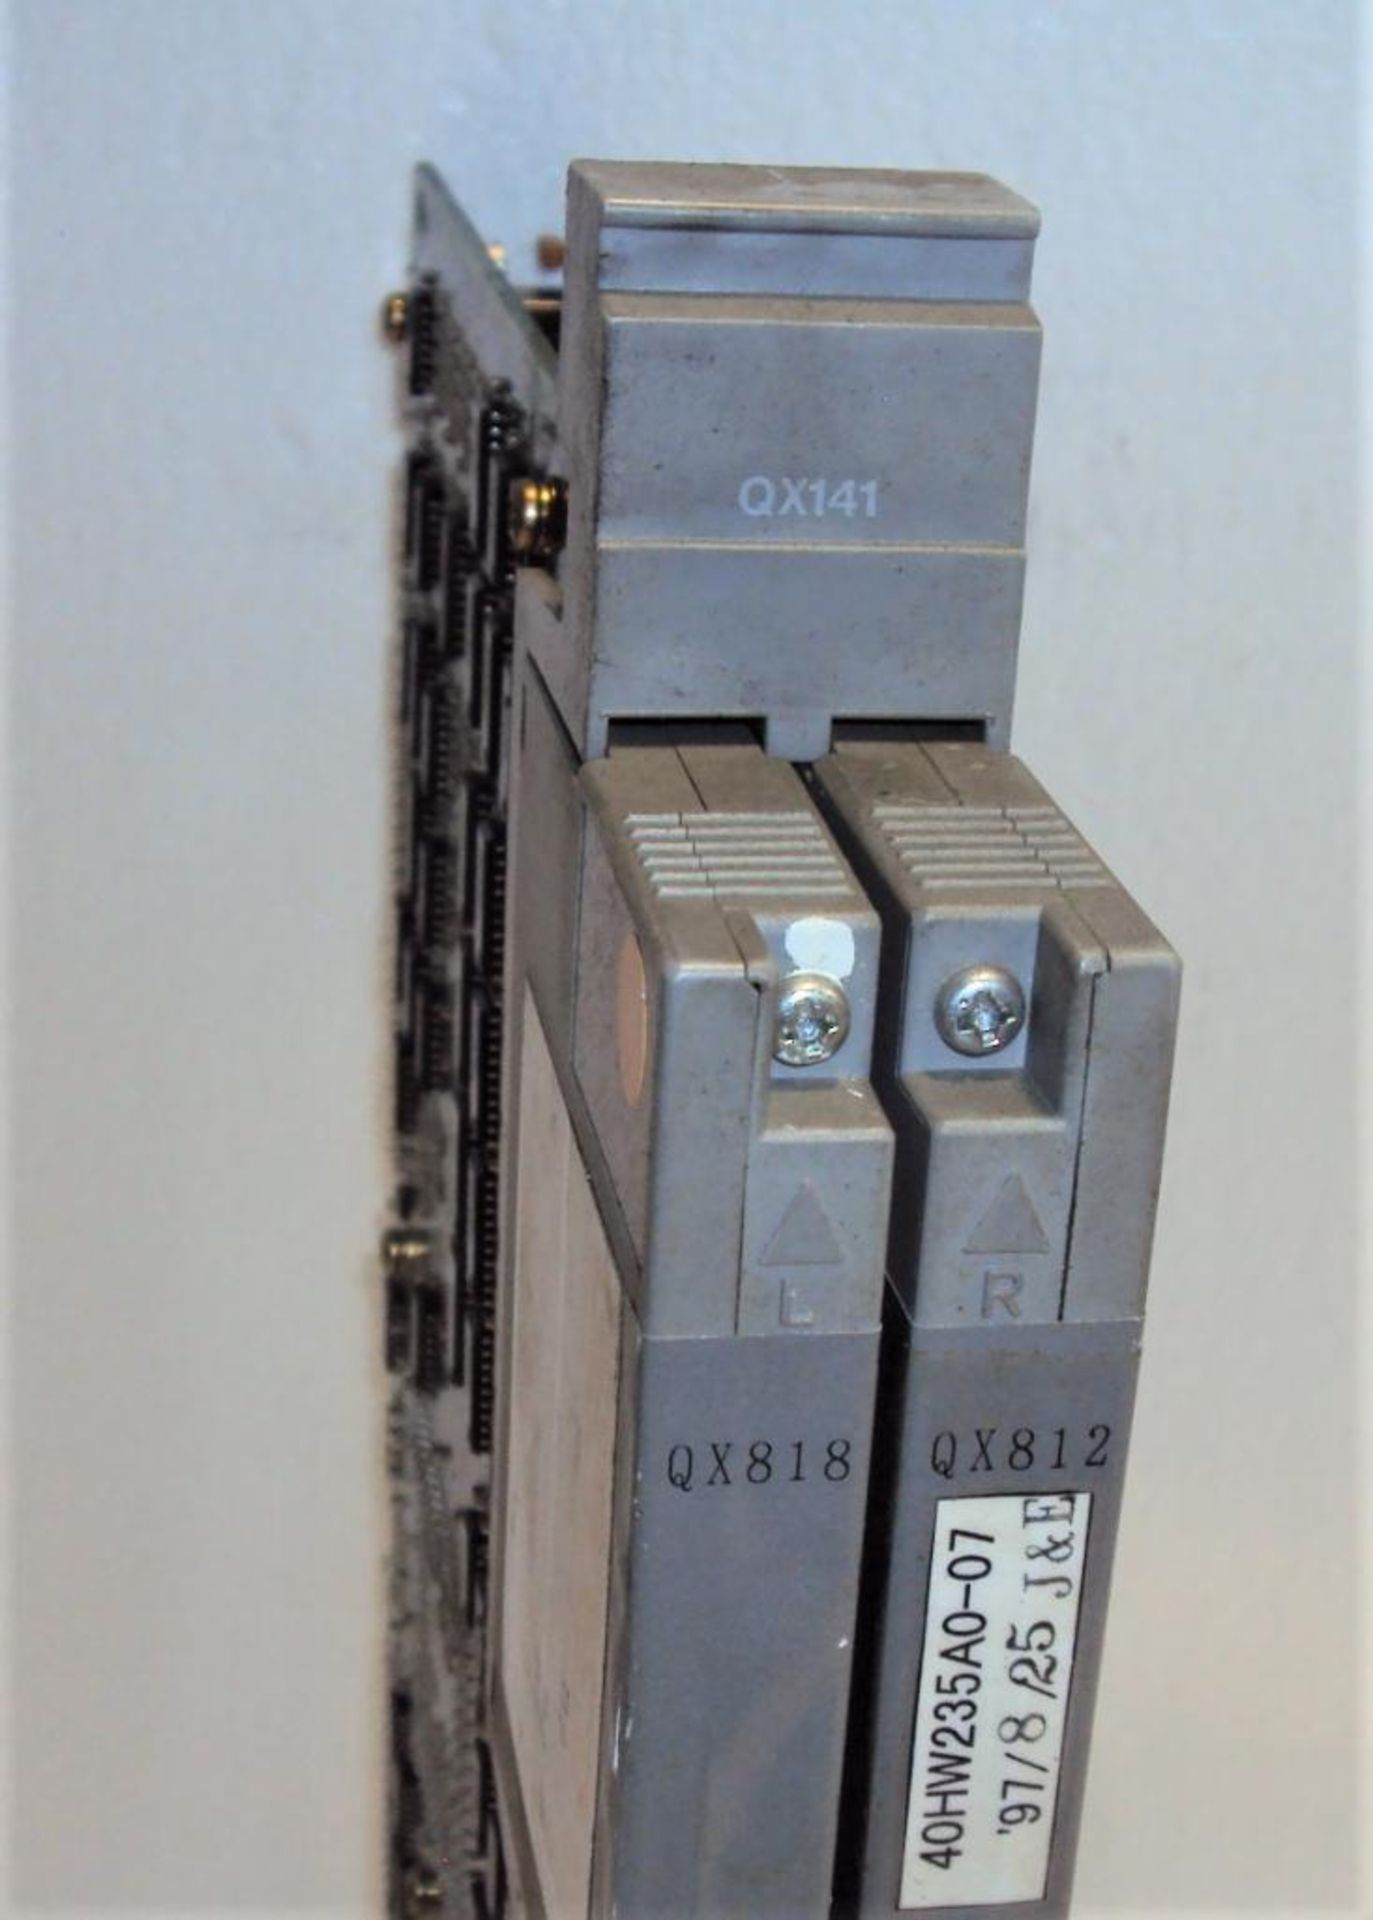 Mitsubishi Mazatrol QX141C BN634A617G52 CPU Module w/ (2) Memory Cassettes QX812 & QX818 and BN634A7 - Image 2 of 7